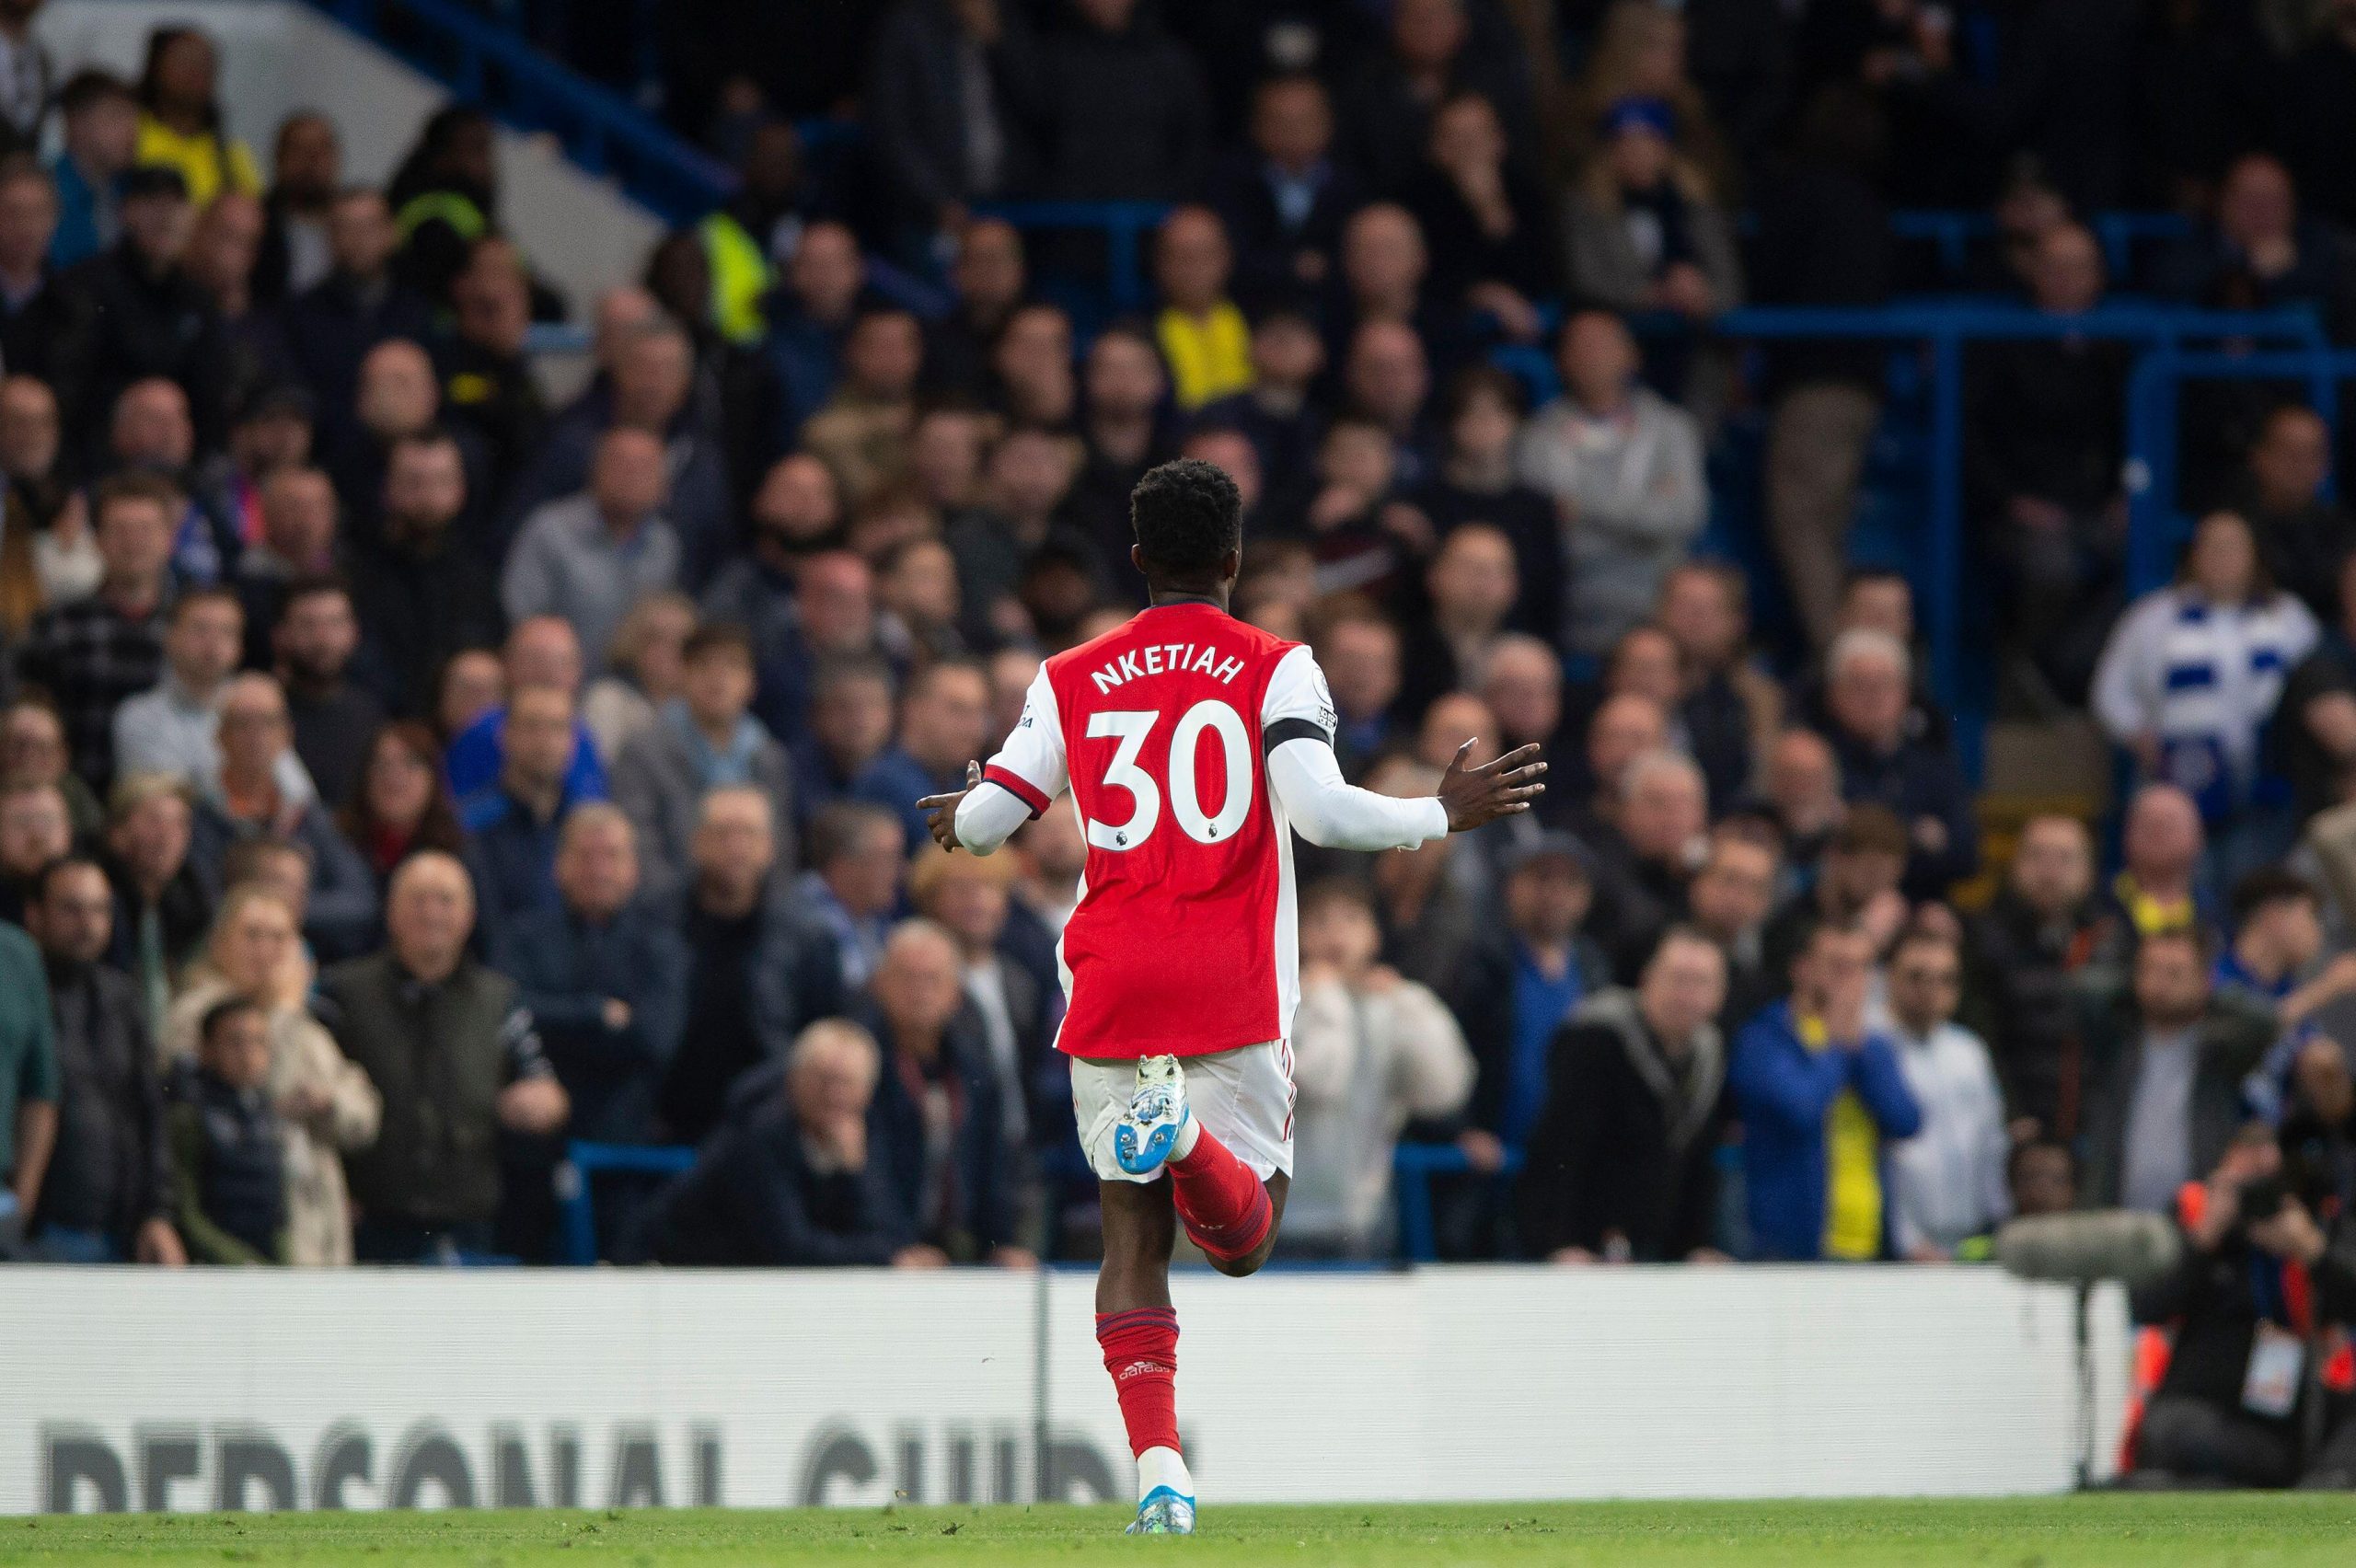 L’Arsenal conferma il contratto di Eddie Nketiah e annuncia il nuovo numero di maglia